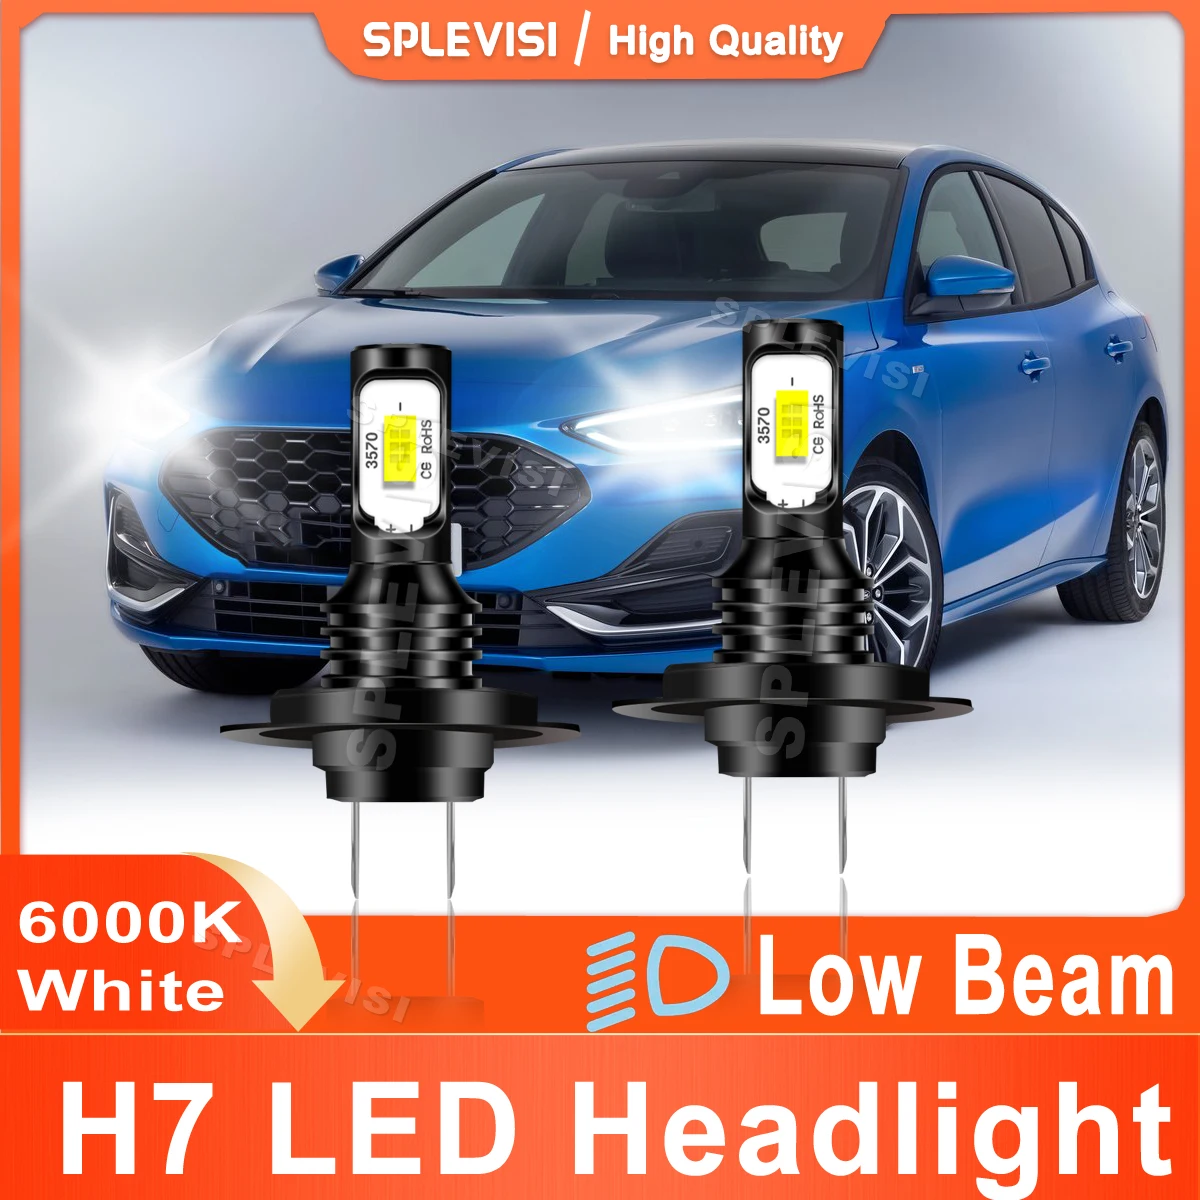 

2x H7 SPLEVISI LED Headlight Low Beam 70W 8000LM For Ford Focus MK4 2018 2019 2020 2021 2022 2023 Car Led Light 6000K XID White